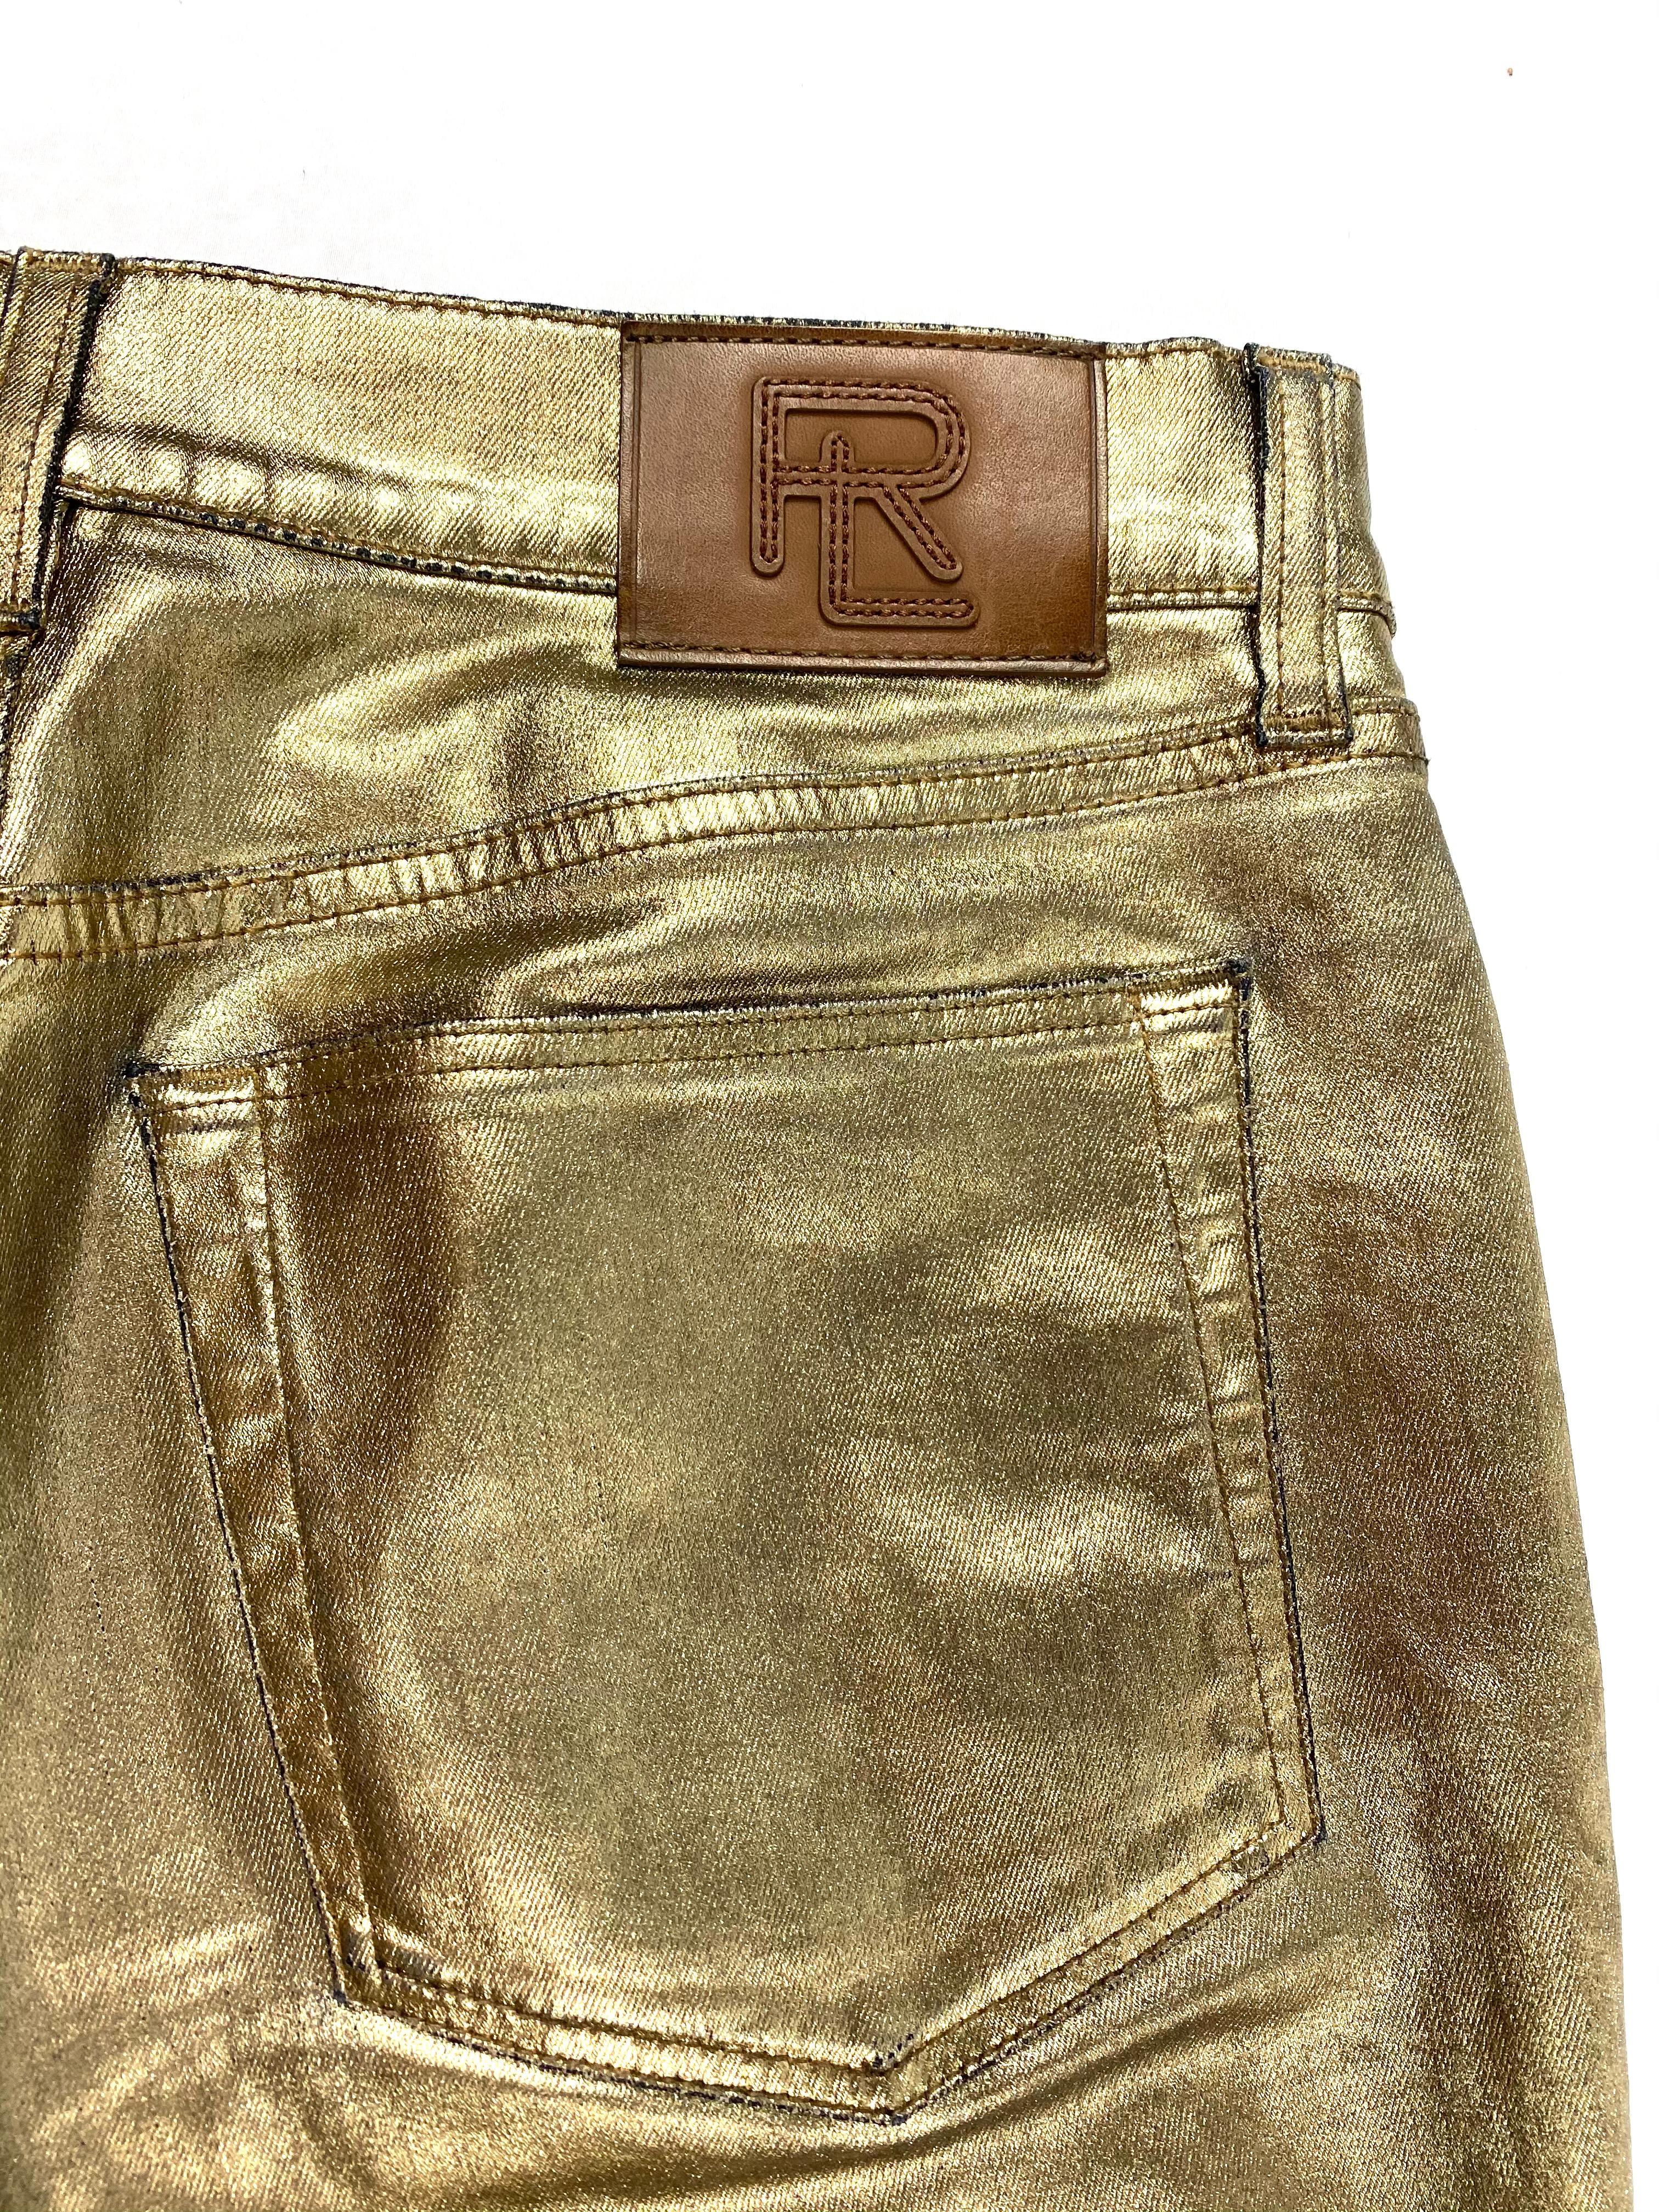 Ralph Lauren Gold Metallic Jeanshose aus Baumwolle Größe 28 4